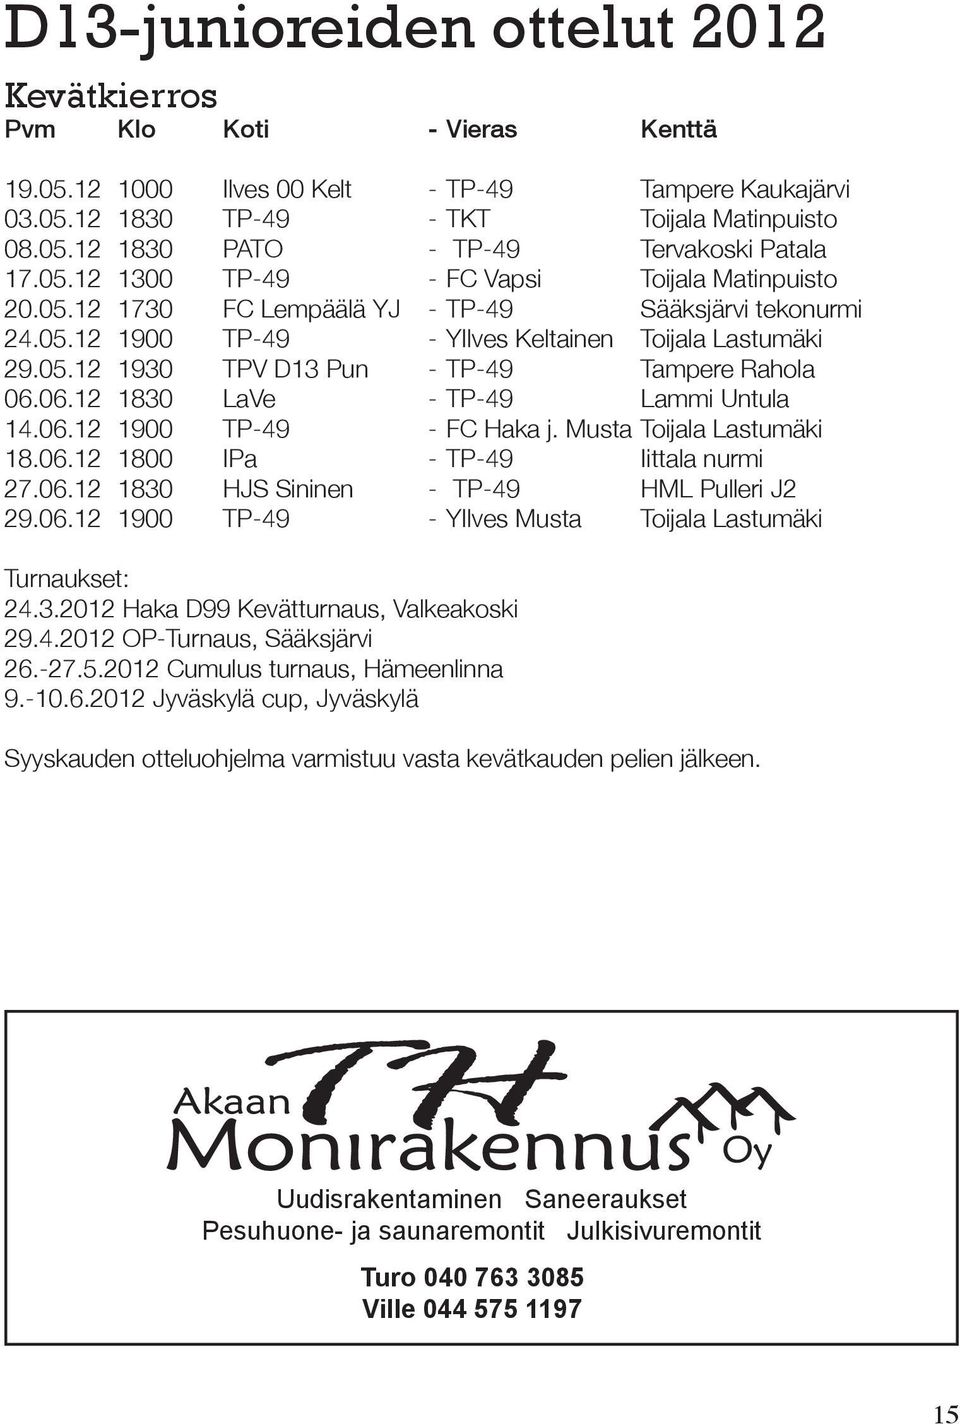 06.12 1830 LaVe - TP-49 Lammi Untula 14.06.12 1900 TP-49 - FC Haka j. Musta Toijala Lastumäki 18.06.12 1800 IPa - TP-49 Iittala nurmi 27.06.12 1830 HJS Sininen - TP-49 HML Pulleri J2 29.06.12 1900 TP-49 - YIlves Musta Toijala Lastumäki Turnaukset: 24.